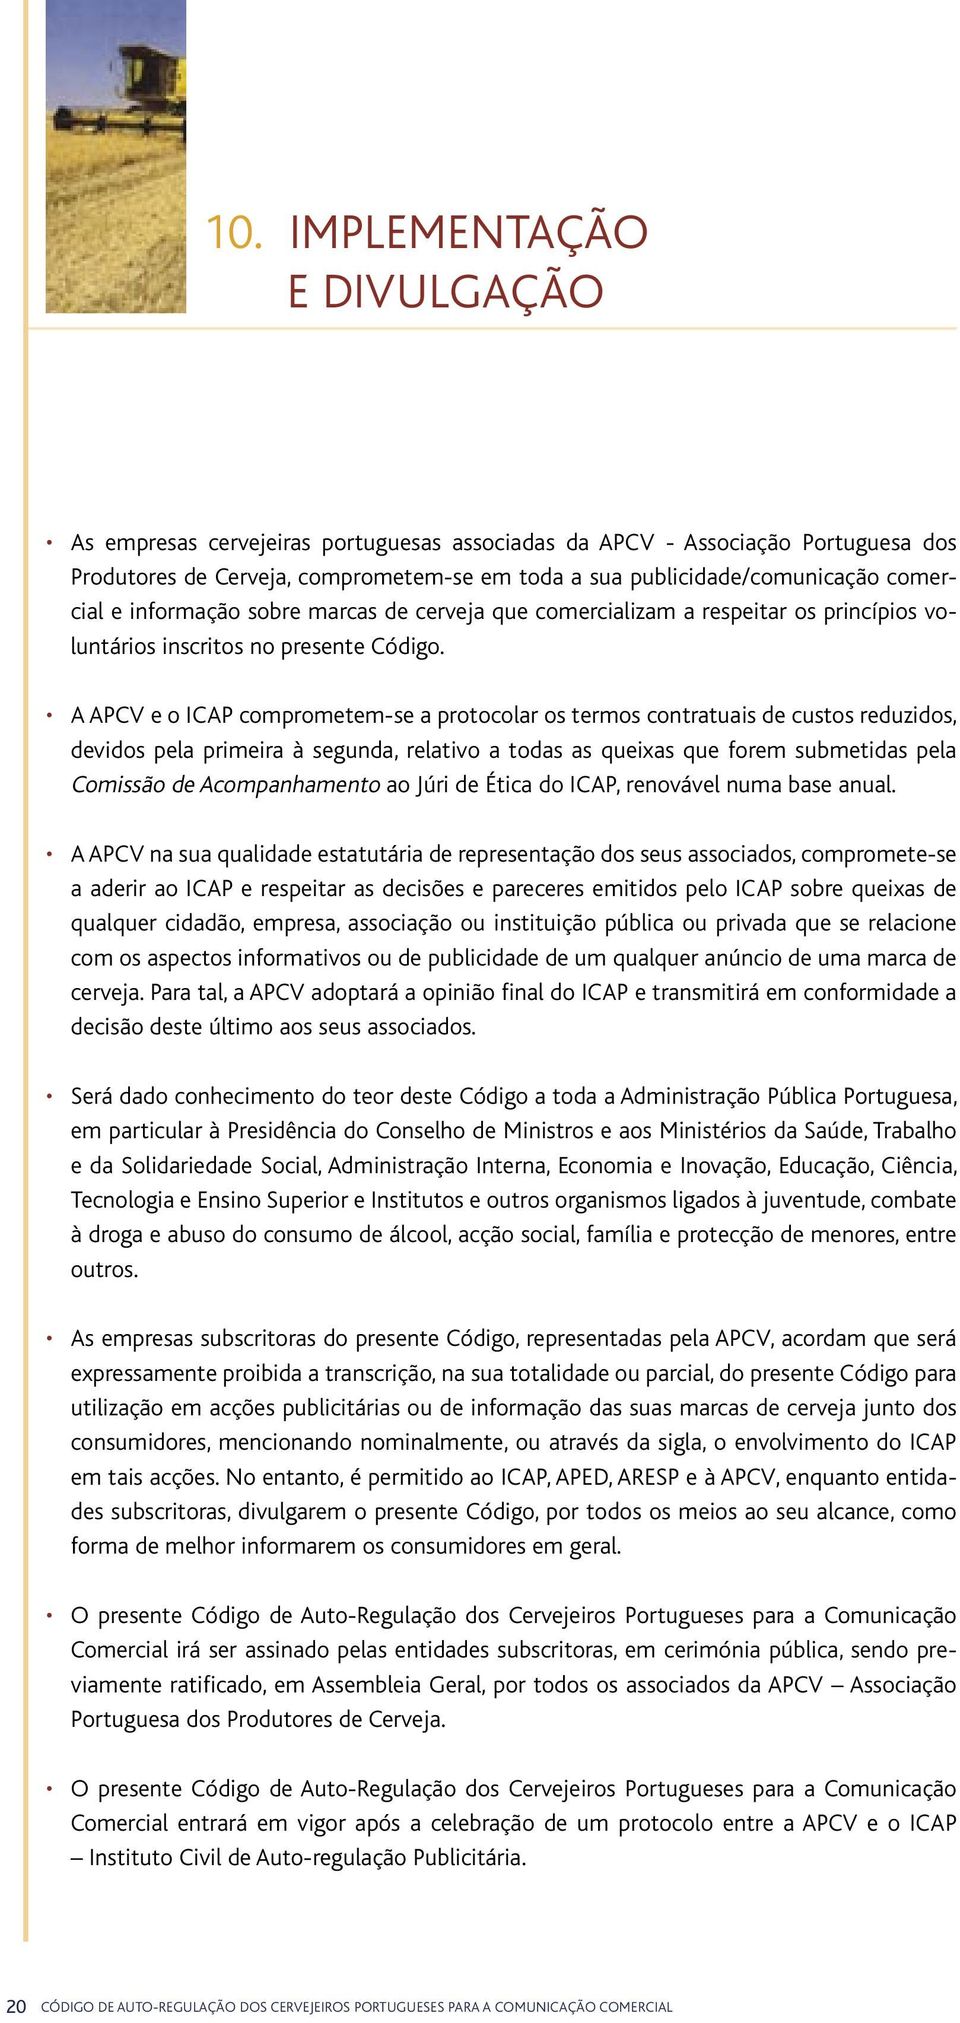 A APCV e o ICAP comprometem-se a protocolar os termos contratuais de custos reduzidos, devidos pela primeira à segunda, relativo a todas as queixas que forem submetidas pela Comissão de